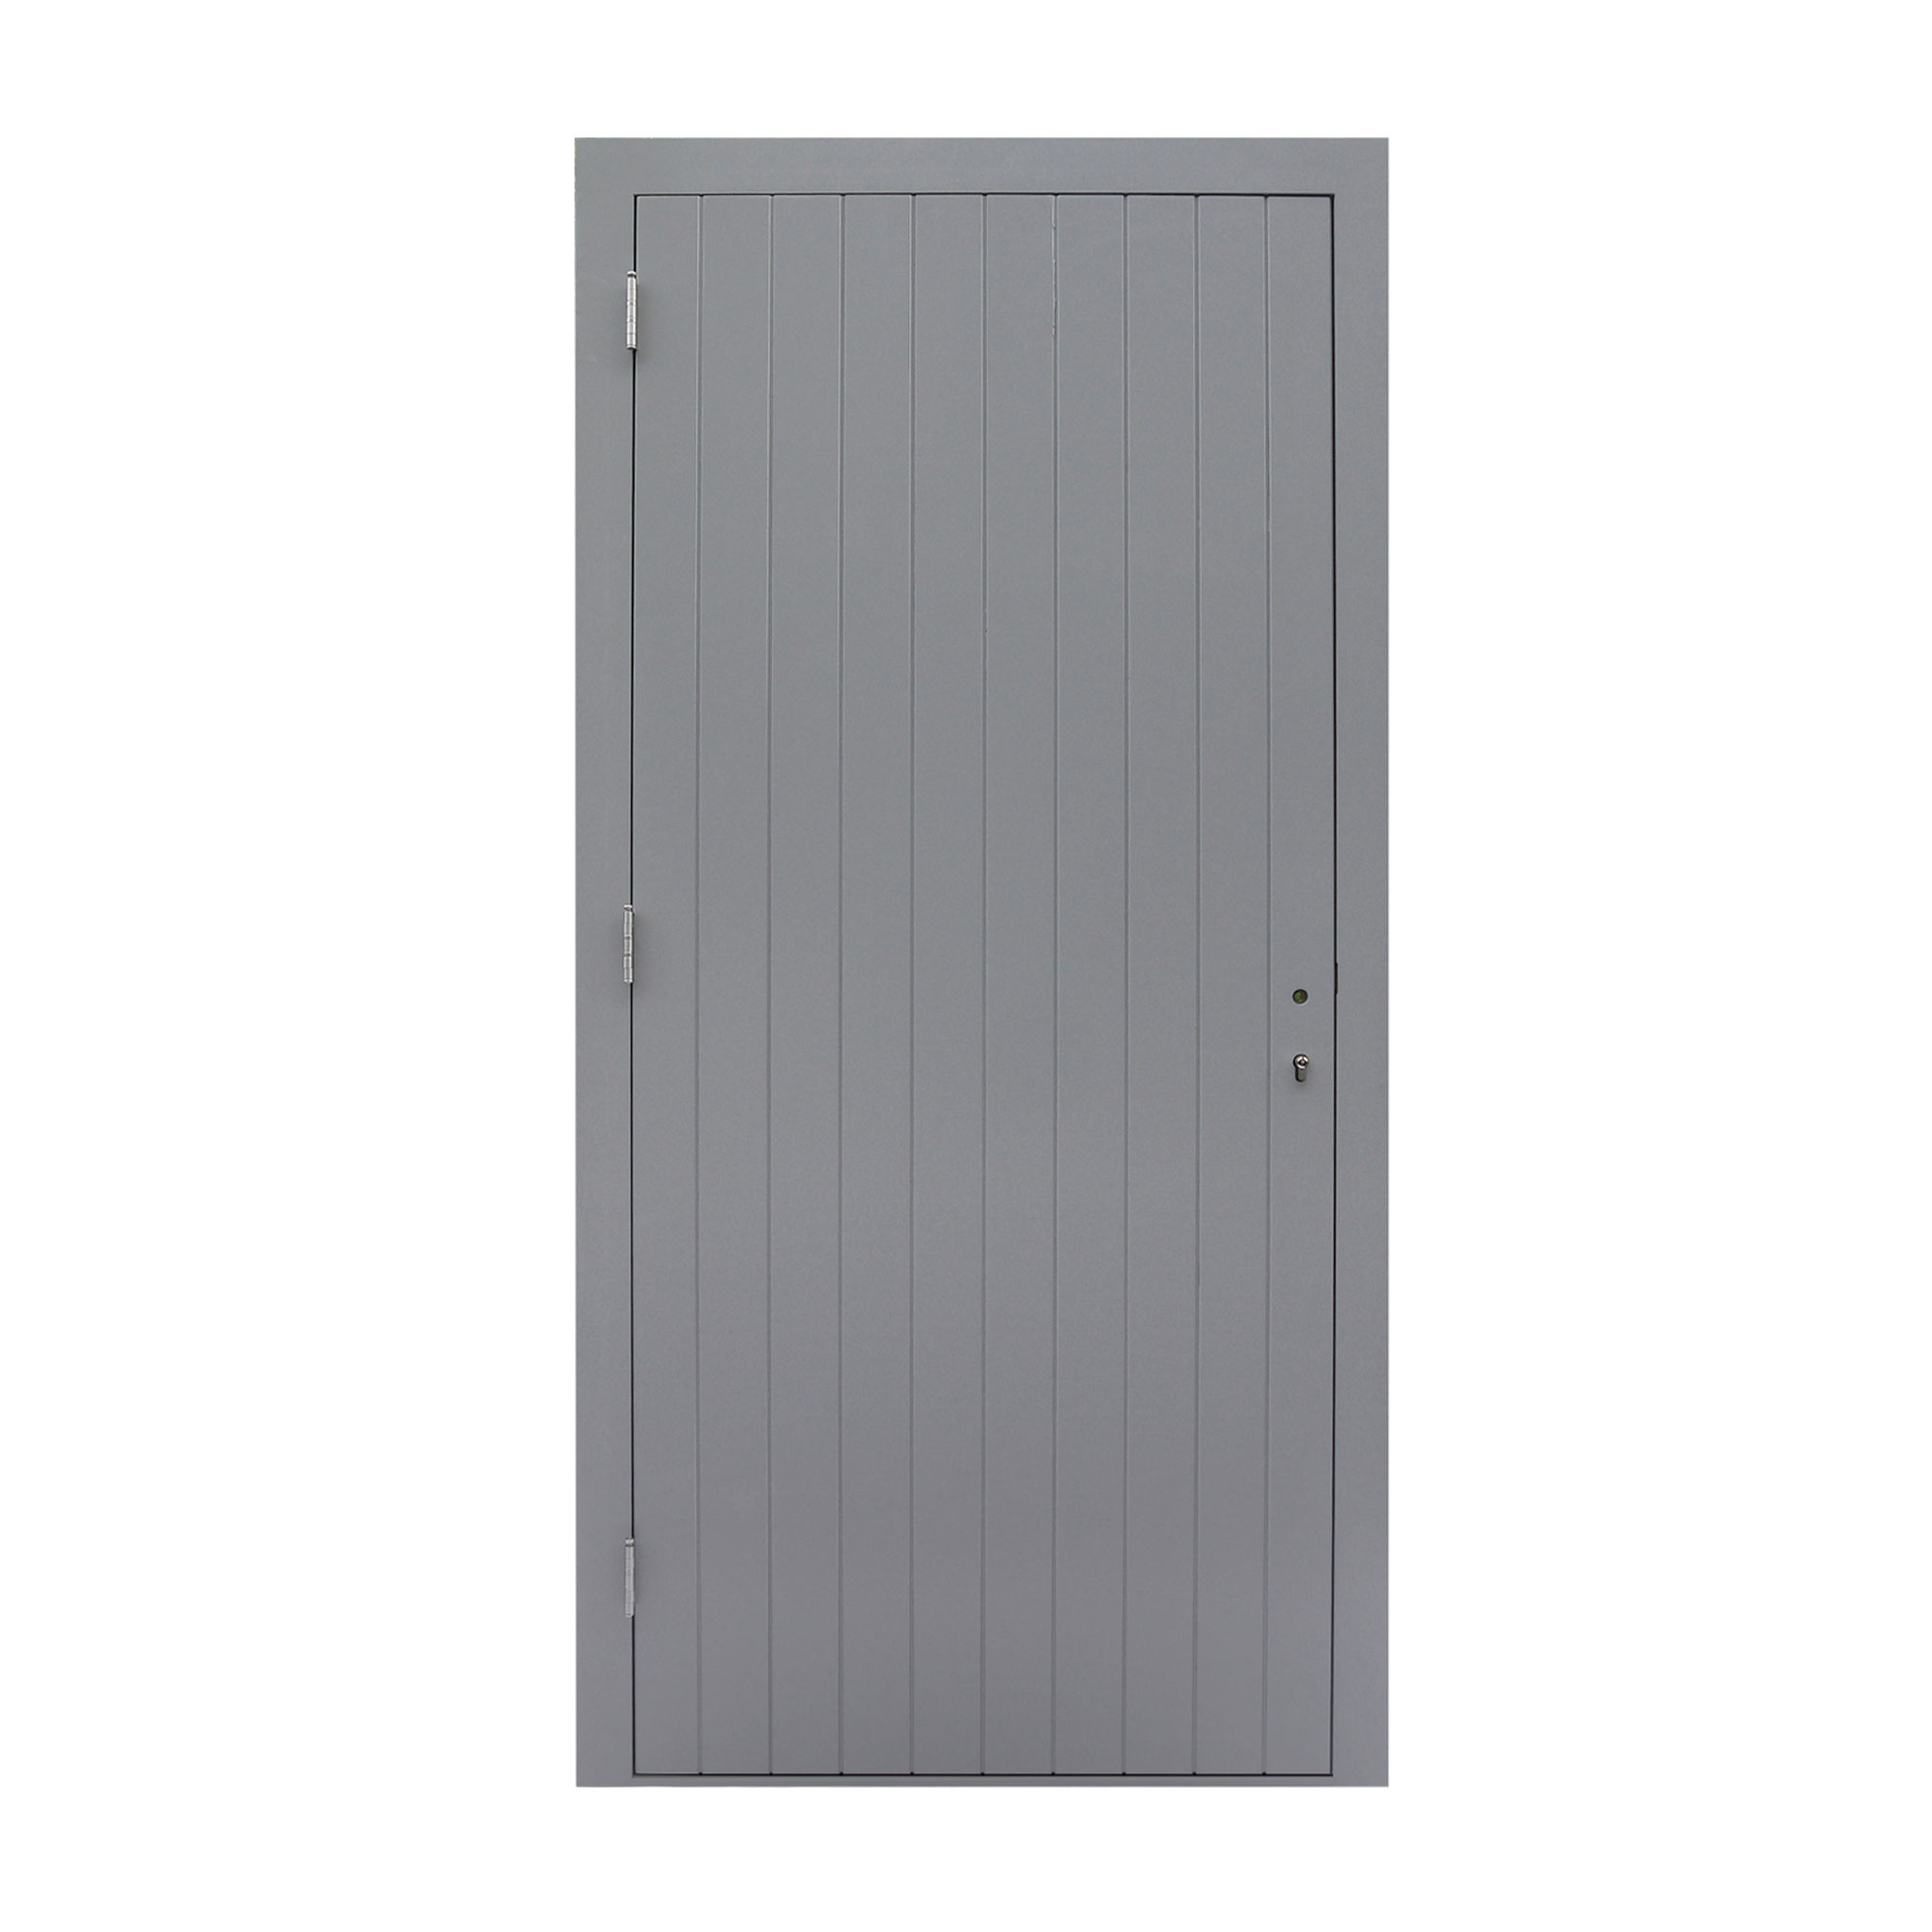 Uitrusten Gewoon haat Hardhouten enkele dichte deur Prestige, 109 x 221 cm, grijs gegrond. -  Stange Houthandel